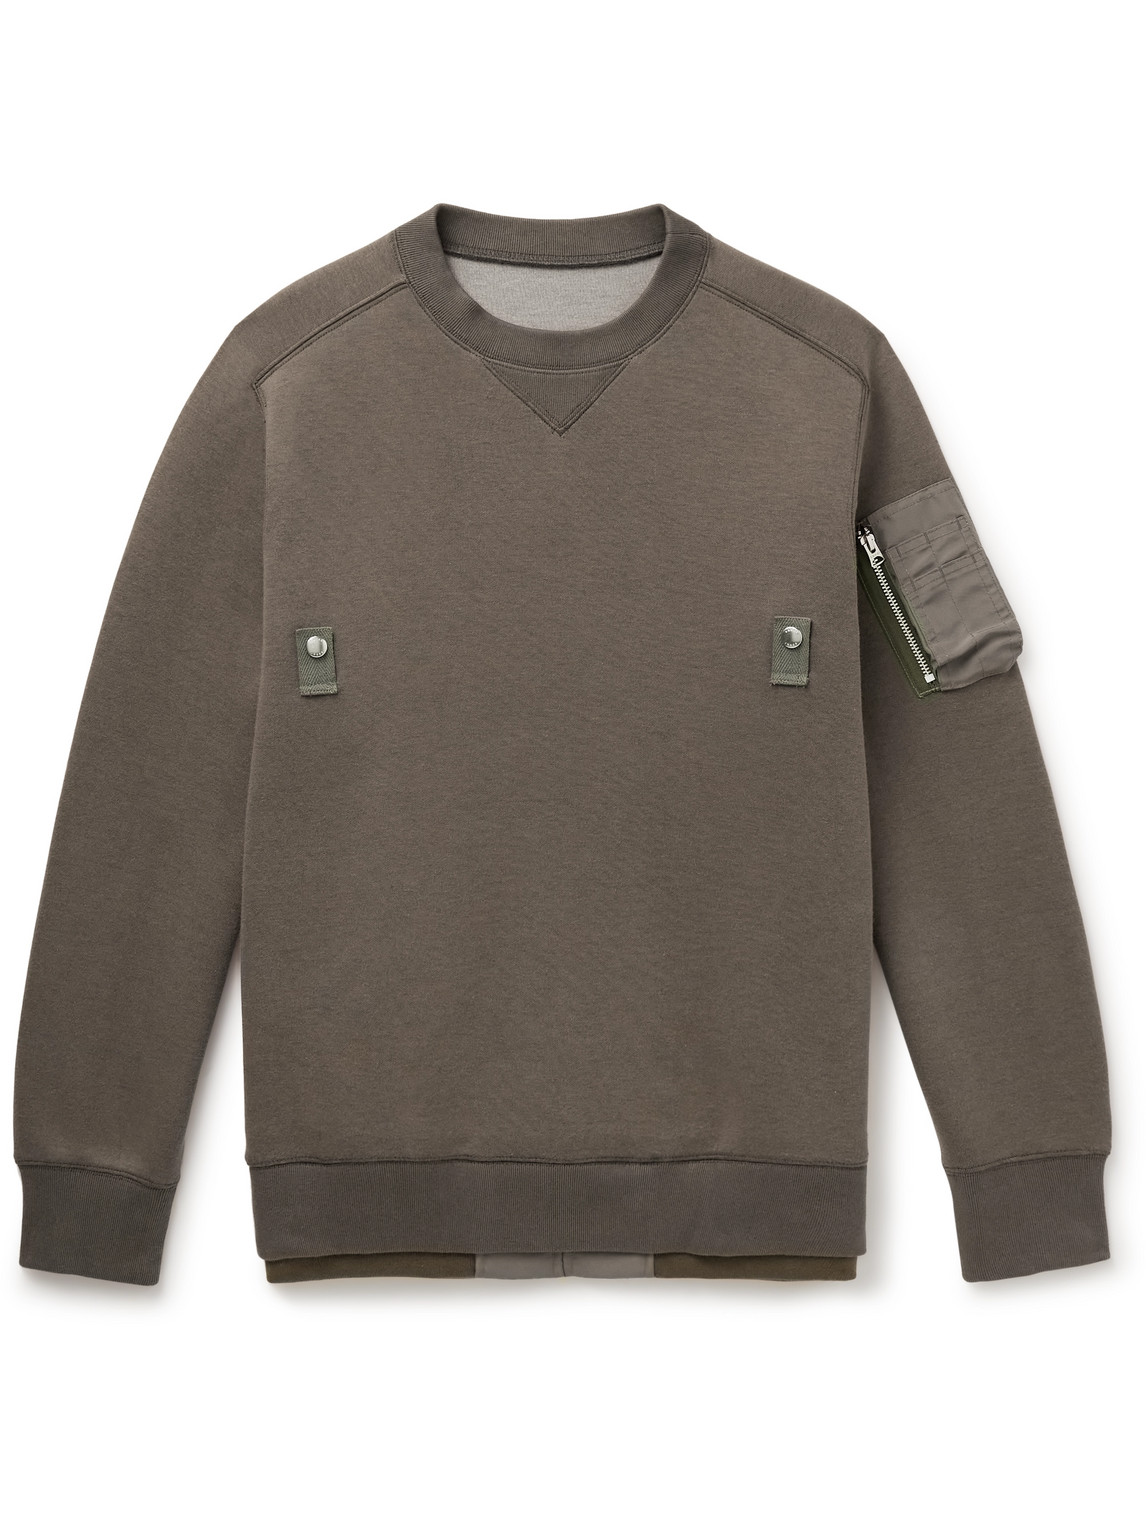 Sacai - Nylon-Trimmed Cotton-Blend Jersey Sweatshirt - Men - Brown - 4 von Sacai